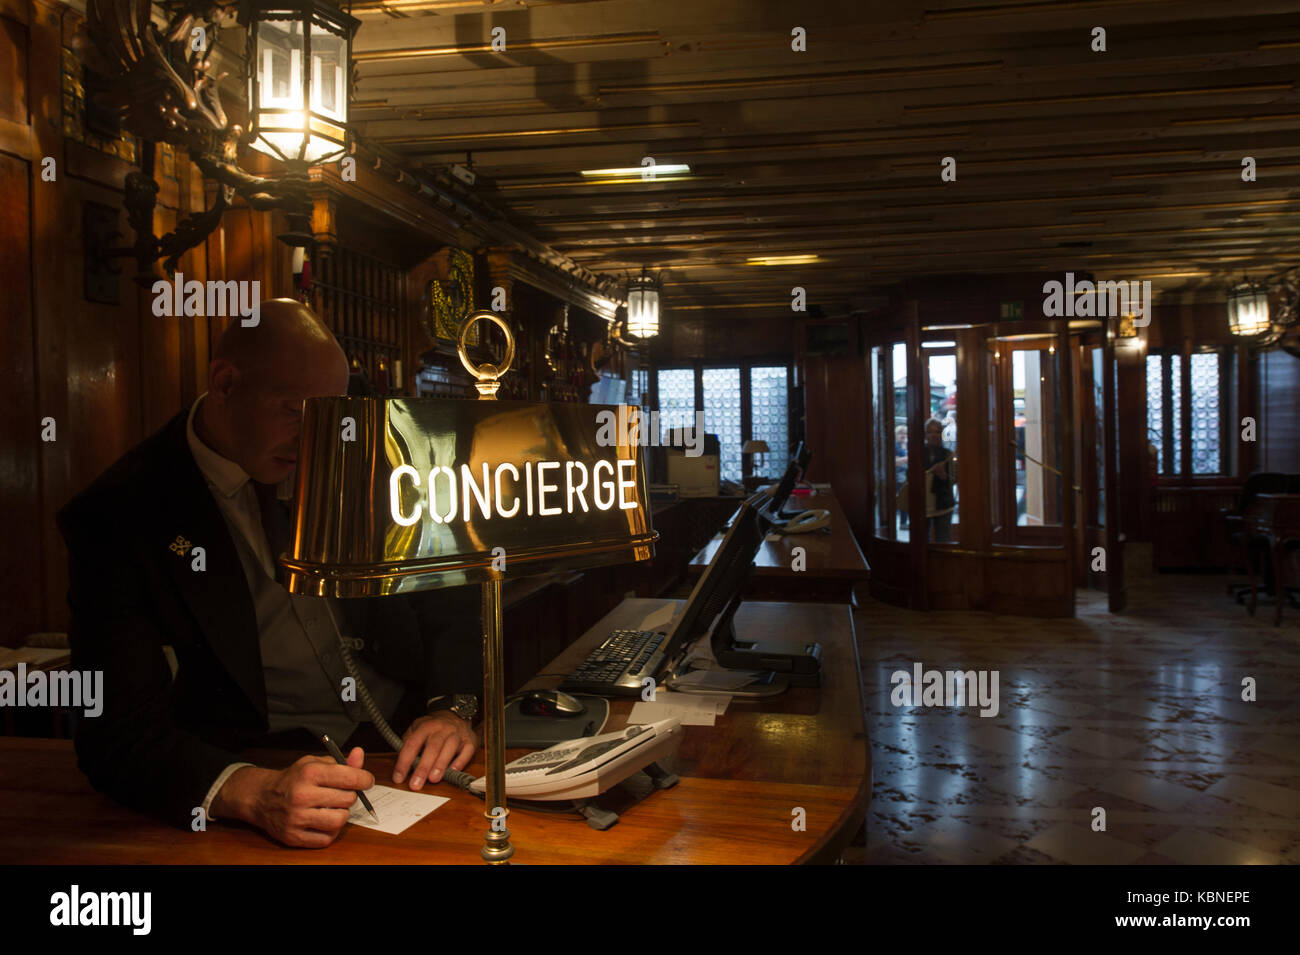 Concierge at the Hotel Danielli in Venice Stock Photo